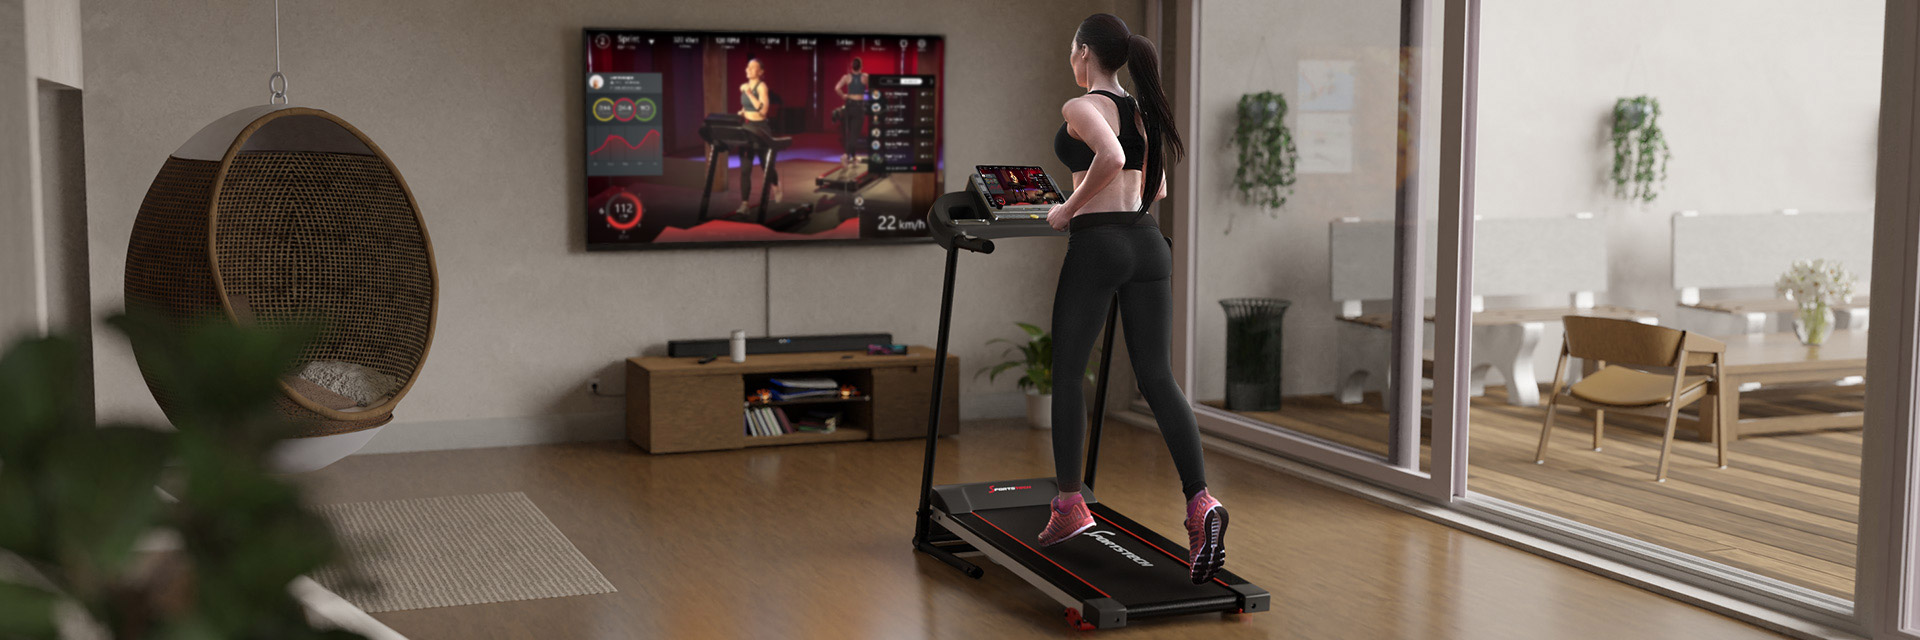 Frau in Sportkleidung läuft auf schwarzem Laufband F10, TV im Hintergrund